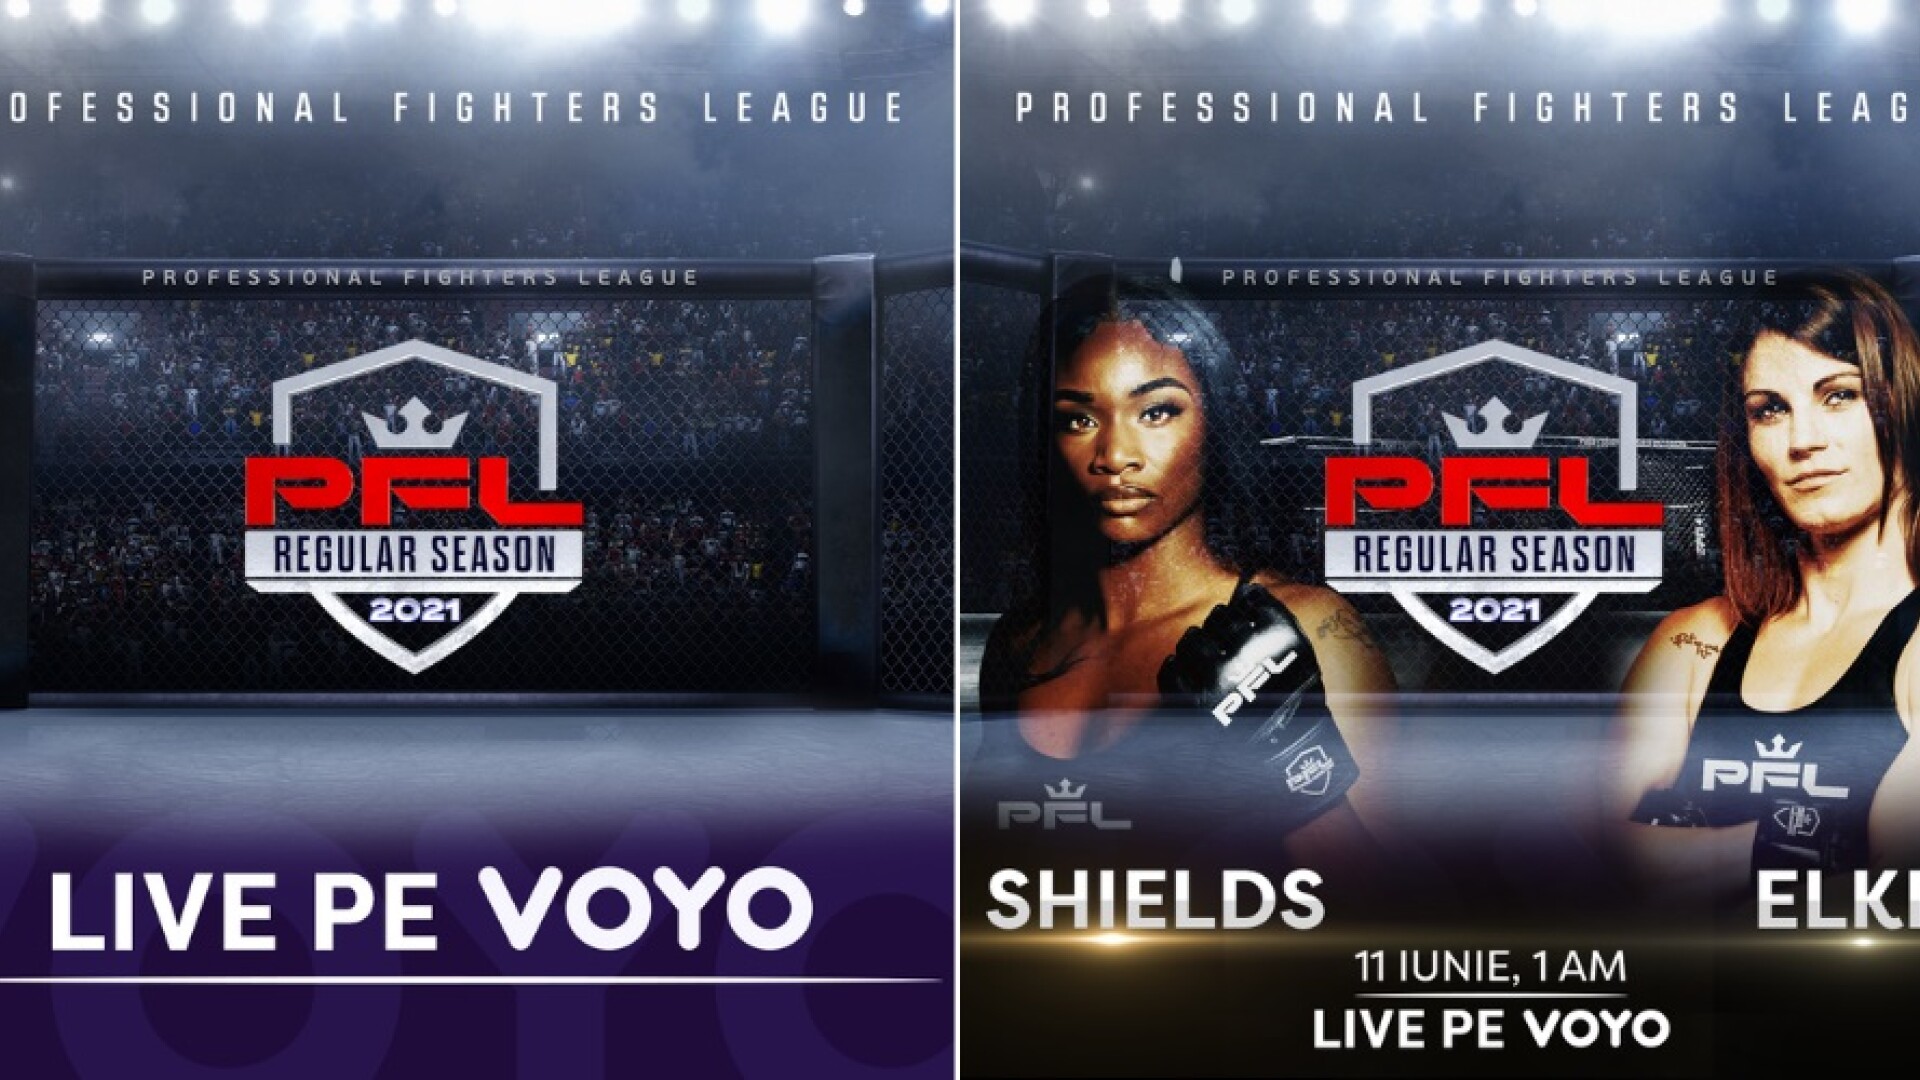 Meciurile din Professional Fighters League (PFL) se văd pe VOYO!